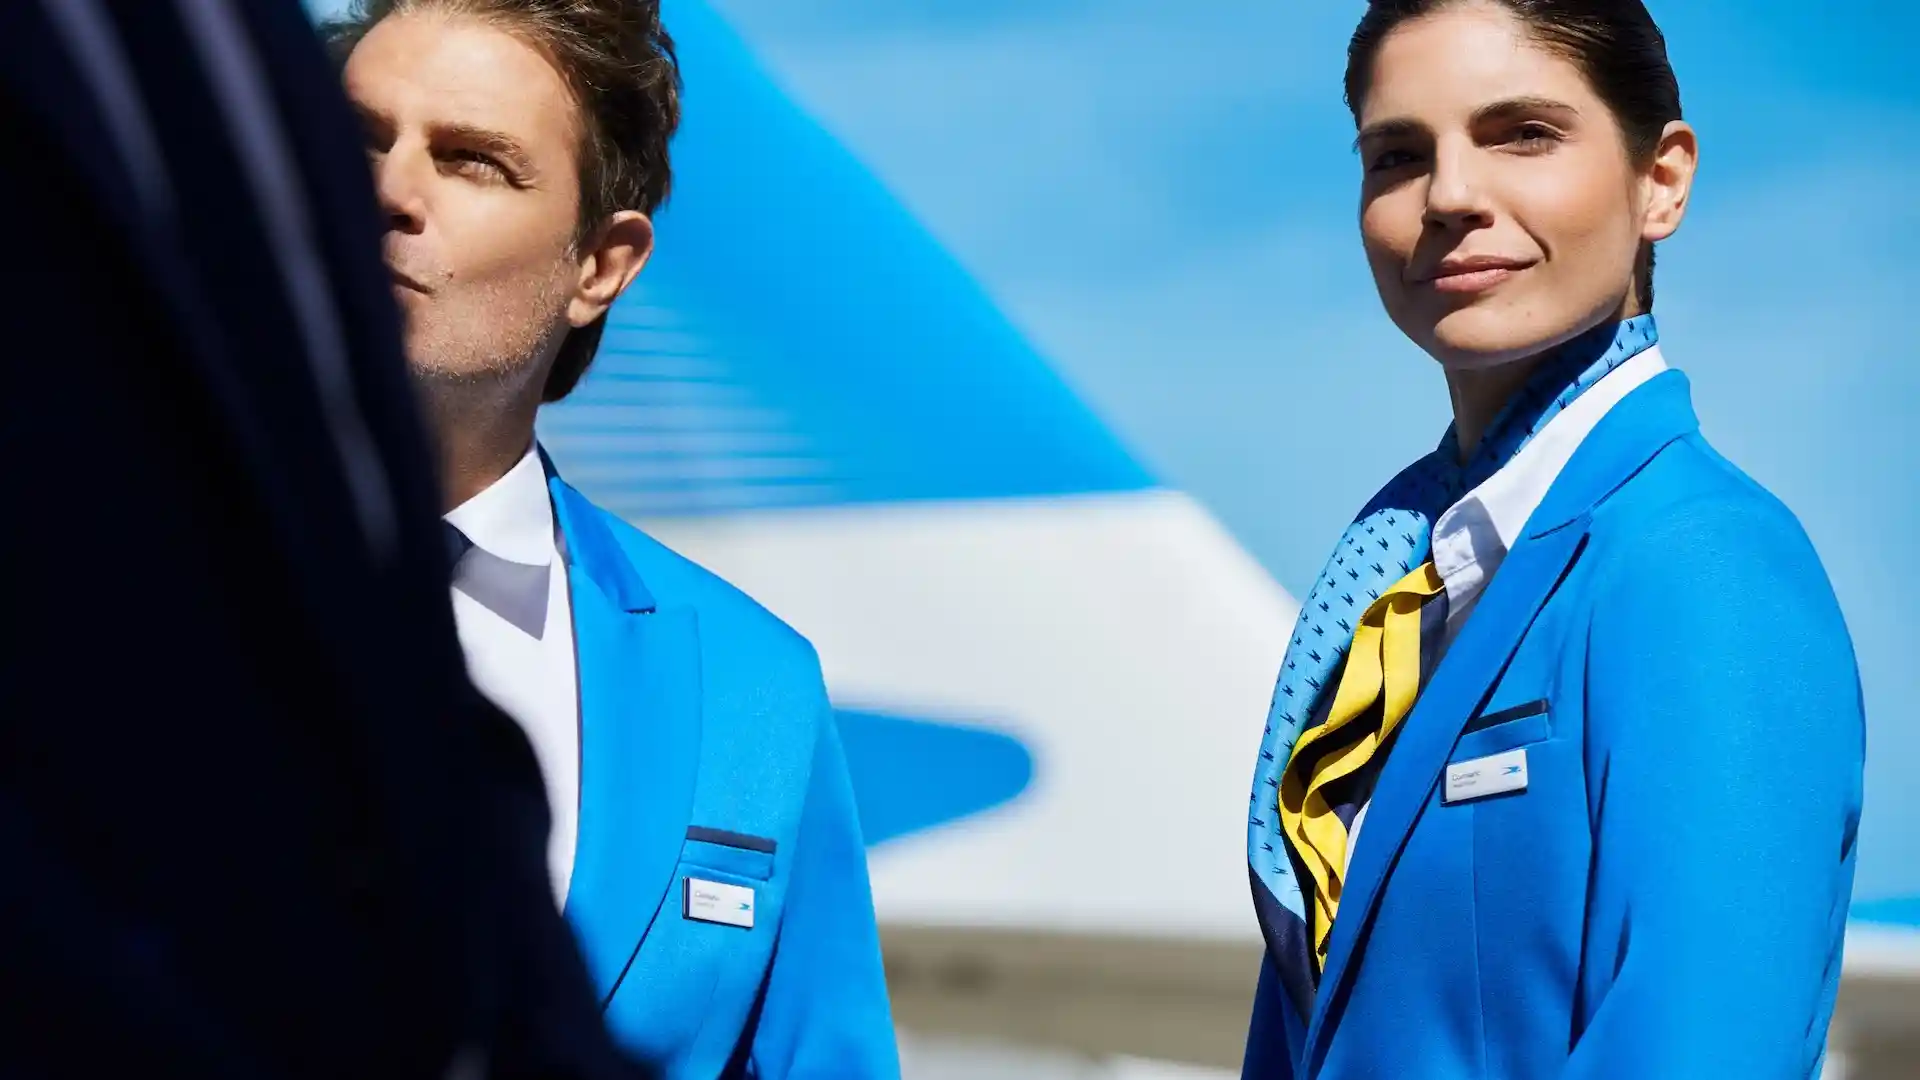 Así son los nuevos uniformes de Aerolíneas Argentinas en fotos